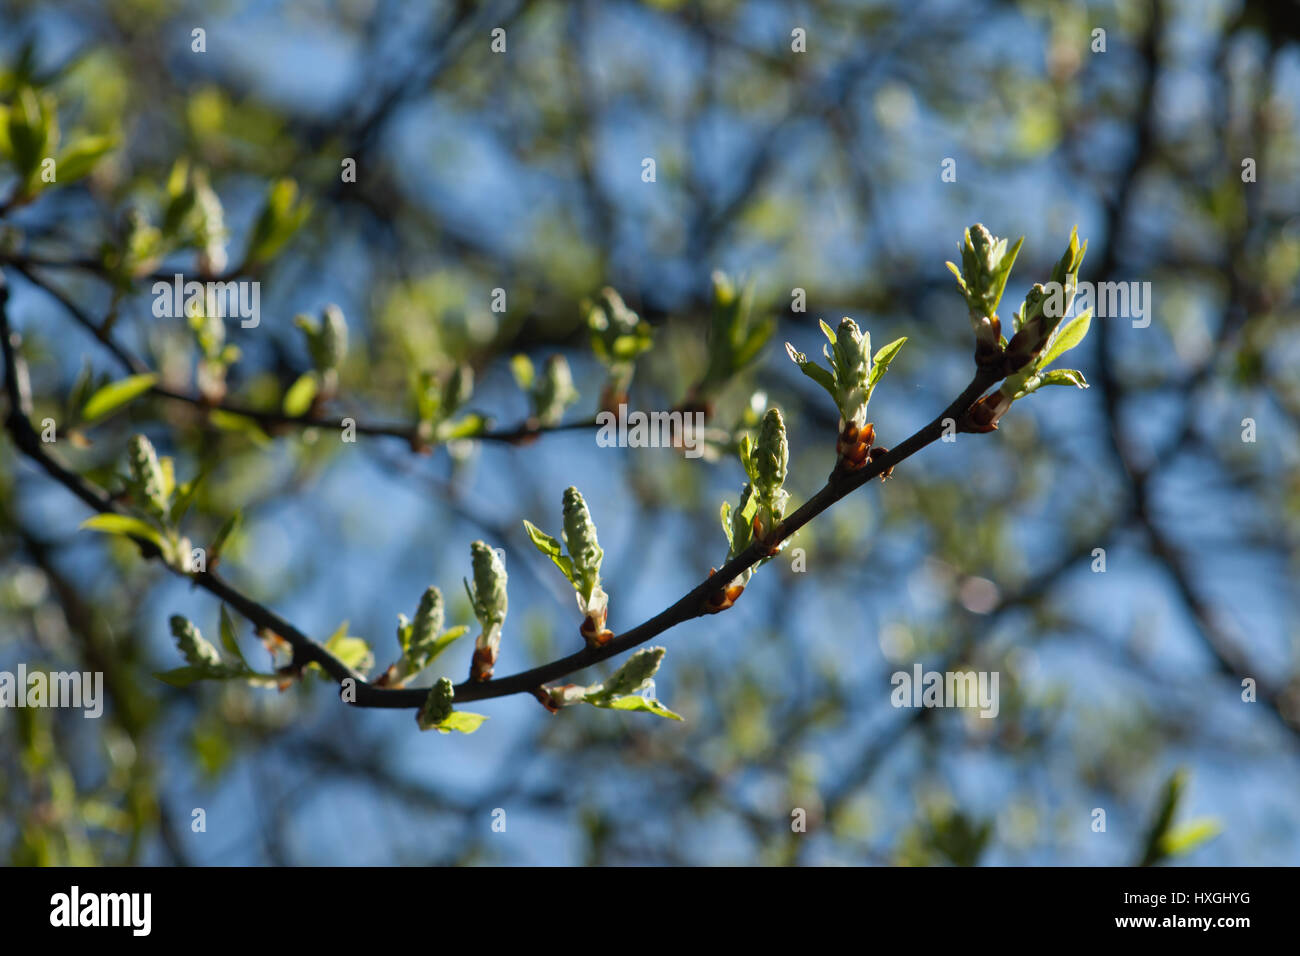 Impressioni dal parco pubblico in Berlin-Wilmersdorf. I fiori, le gemme al sole del mattino. Foto Stock